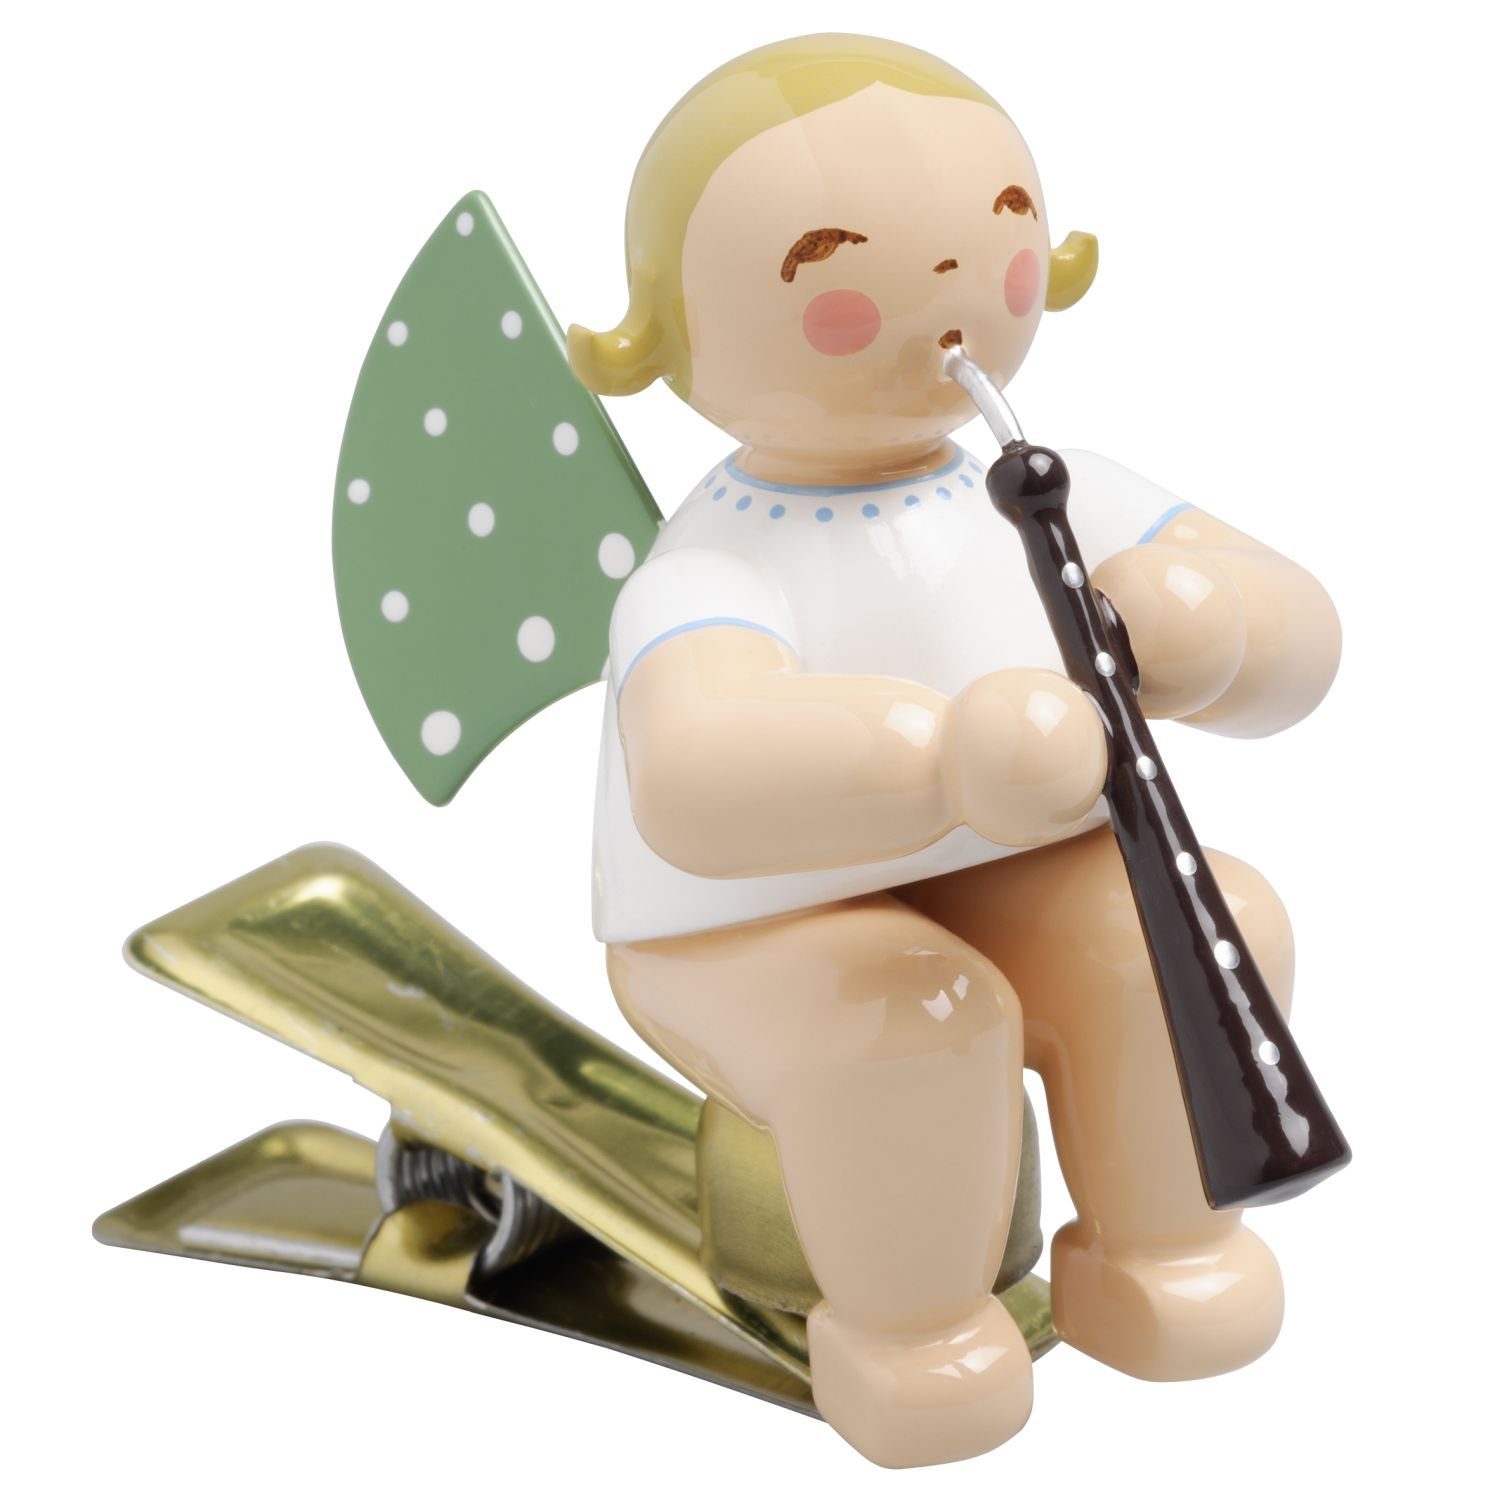 Wendt & Kühn Weihnachtsfigur Engel mit Altoboe auf Klemme 650/90/69, zufällig blond oder braunhaarig | Dekofiguren